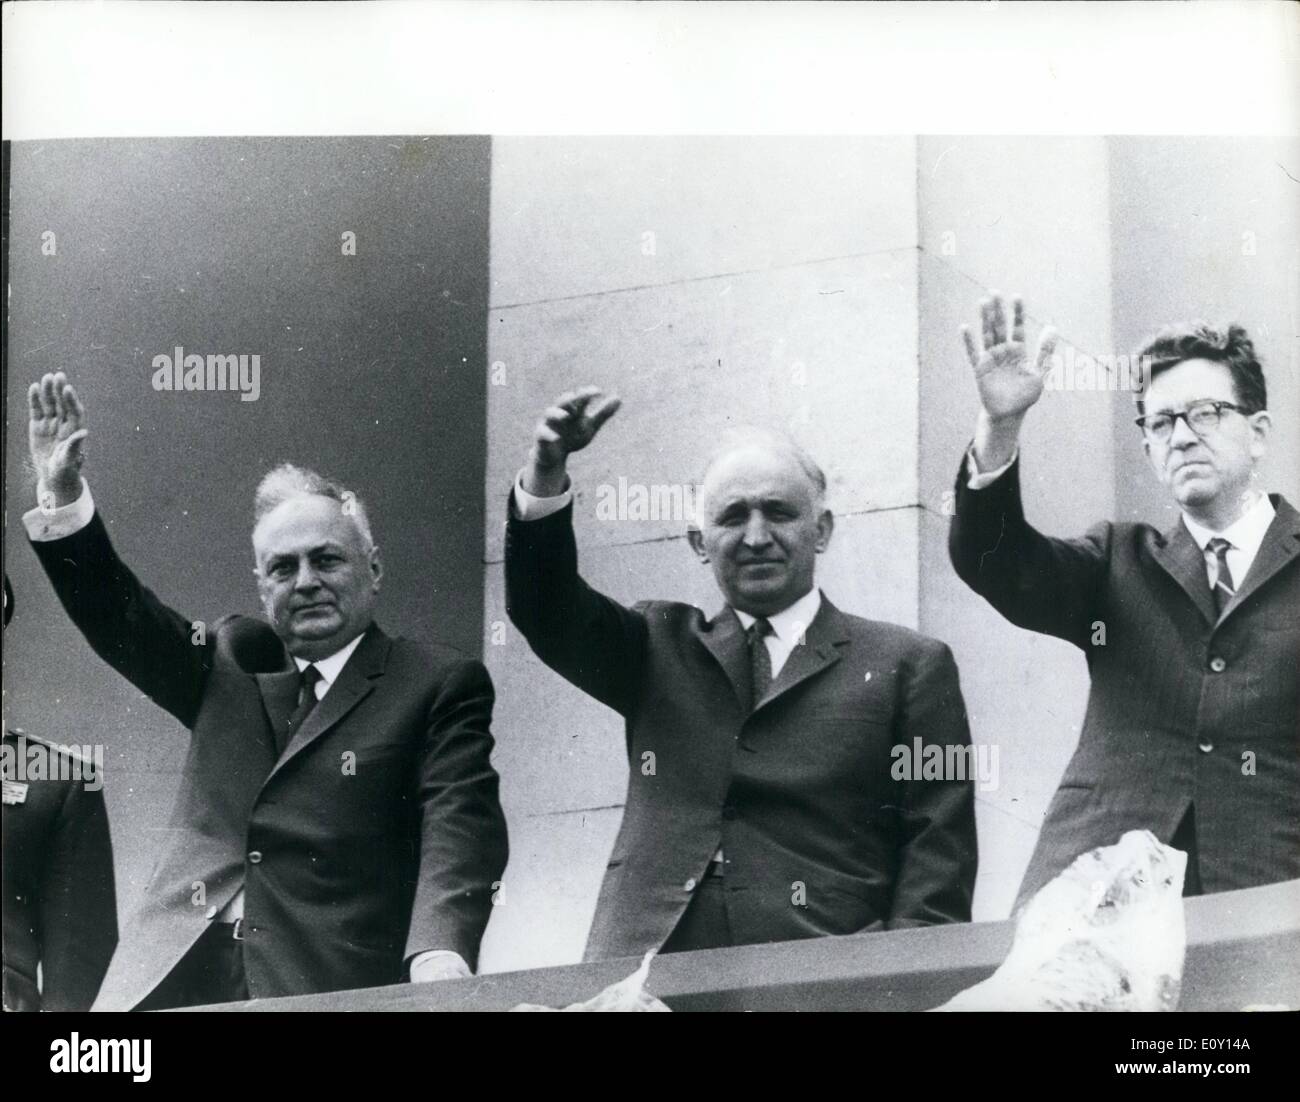 5. Mai 1968 - Maifeiertag in Sofia: Foto zeigt Bild auf der Tribüne des Mausoleums Georgi Dimitrov während der Mai-Feierlichkeiten in Sofia, Bulgarien, (L, R) sind: Stanko Todorov, Mitglied des Politbüros und Sekretär des ZK der BCP; Todor Schiwkow, erster Sekretär des ZK der BCP und Premierminister und Pascal. Schiwkow, Mitglied des Politbüro des ZK der BCP und erster stellvertretender Ministerpräsident. Stockfoto